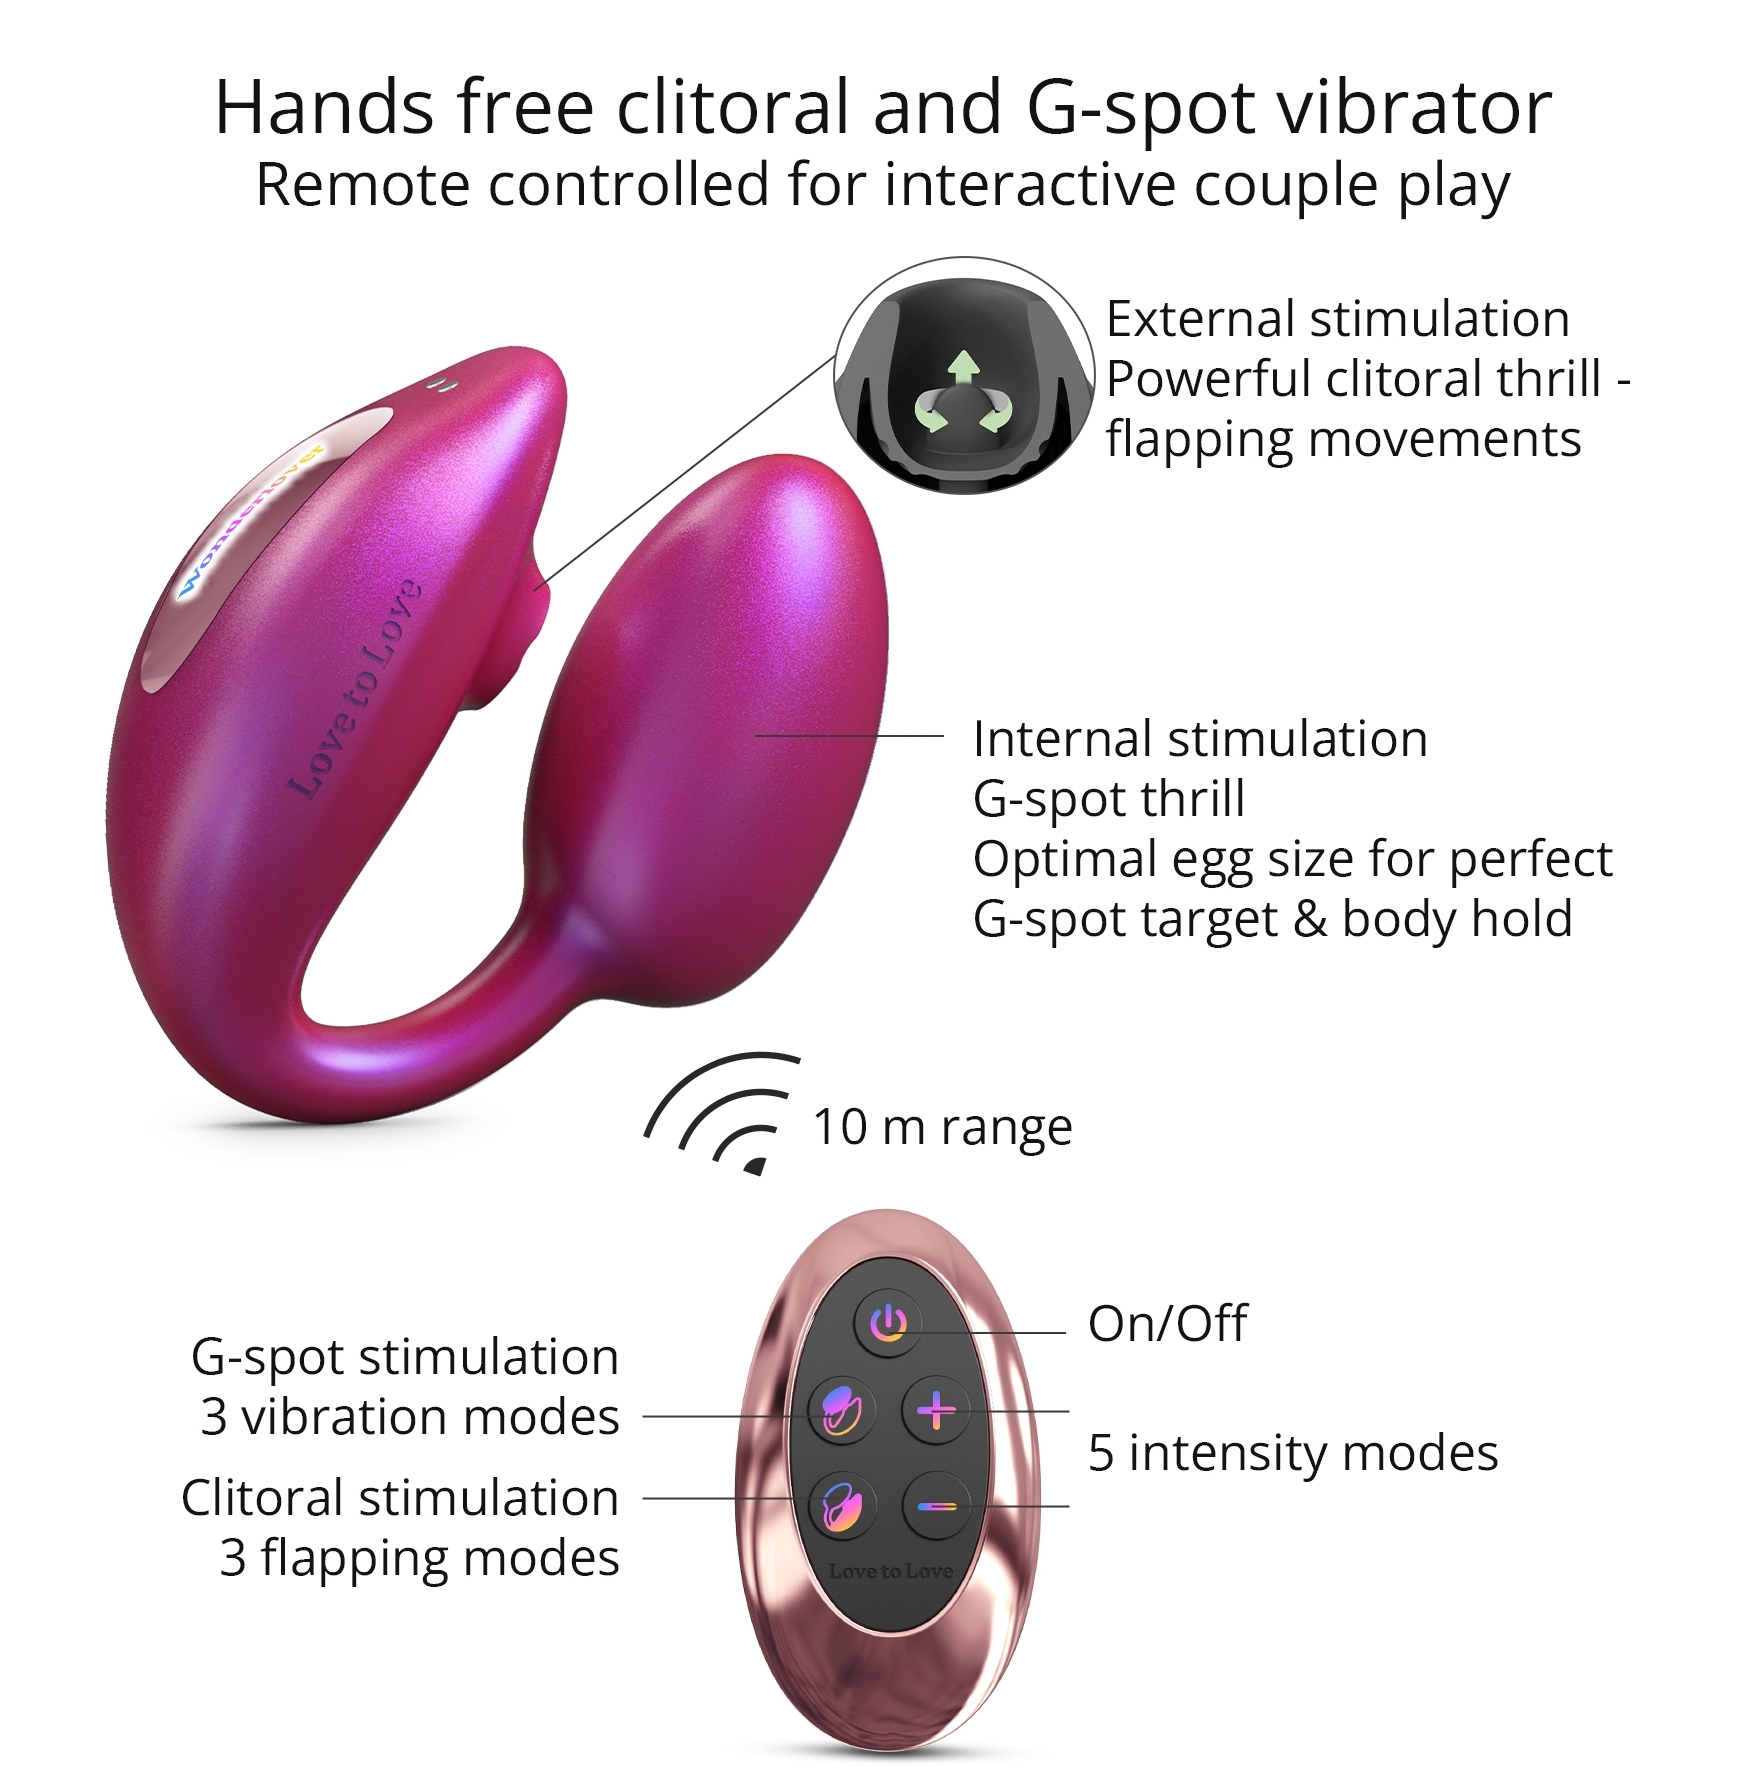 Le stimulateur Wonderlover conçu avec un oeuf vibrant stimulant le point G.Le stimulateur de clitoris effet succion